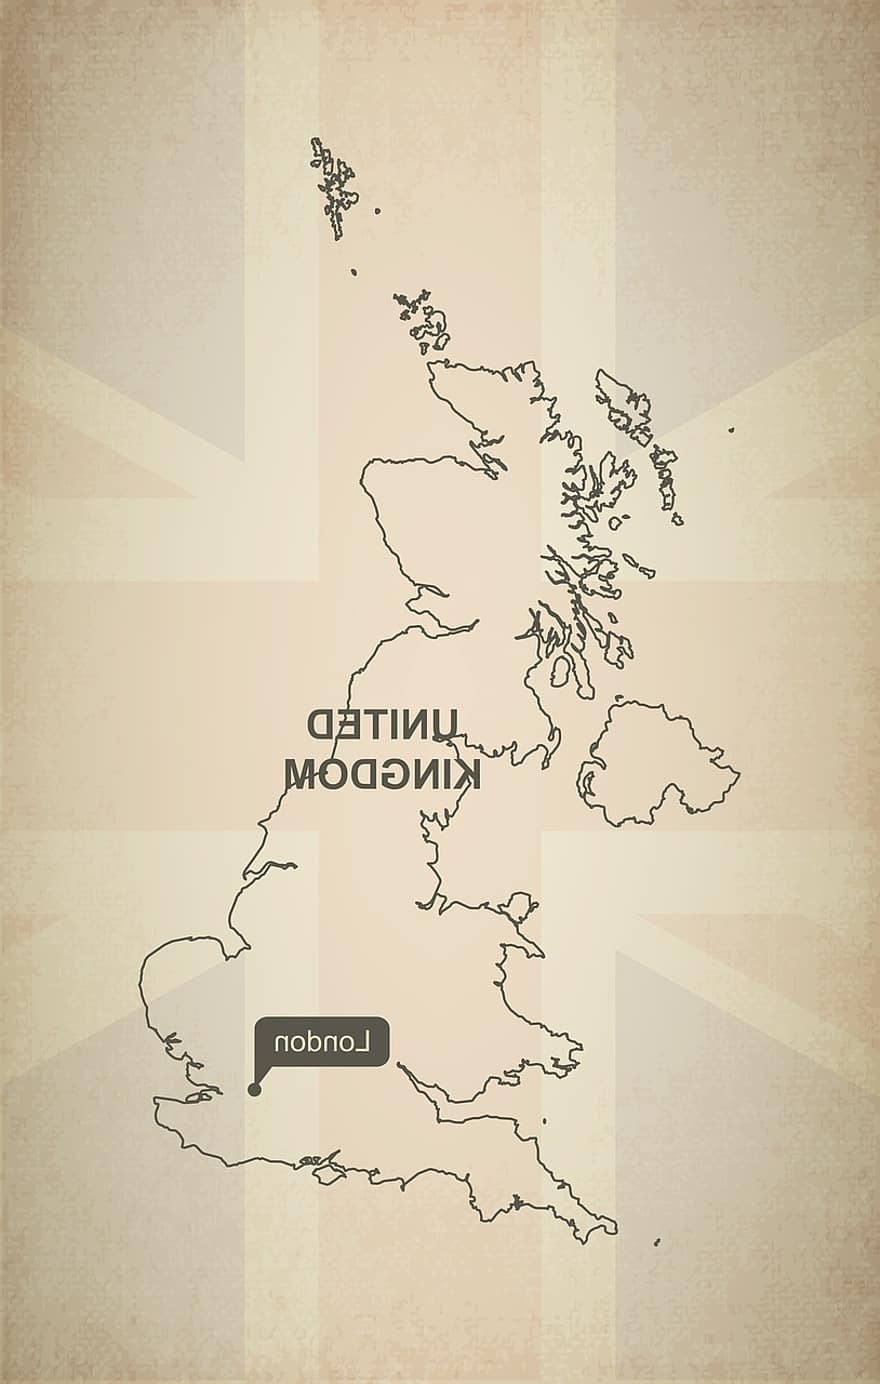 schema, carta geografica, Regno Unito, geografia, nazione, mappe, Europa, preciso, bandiera